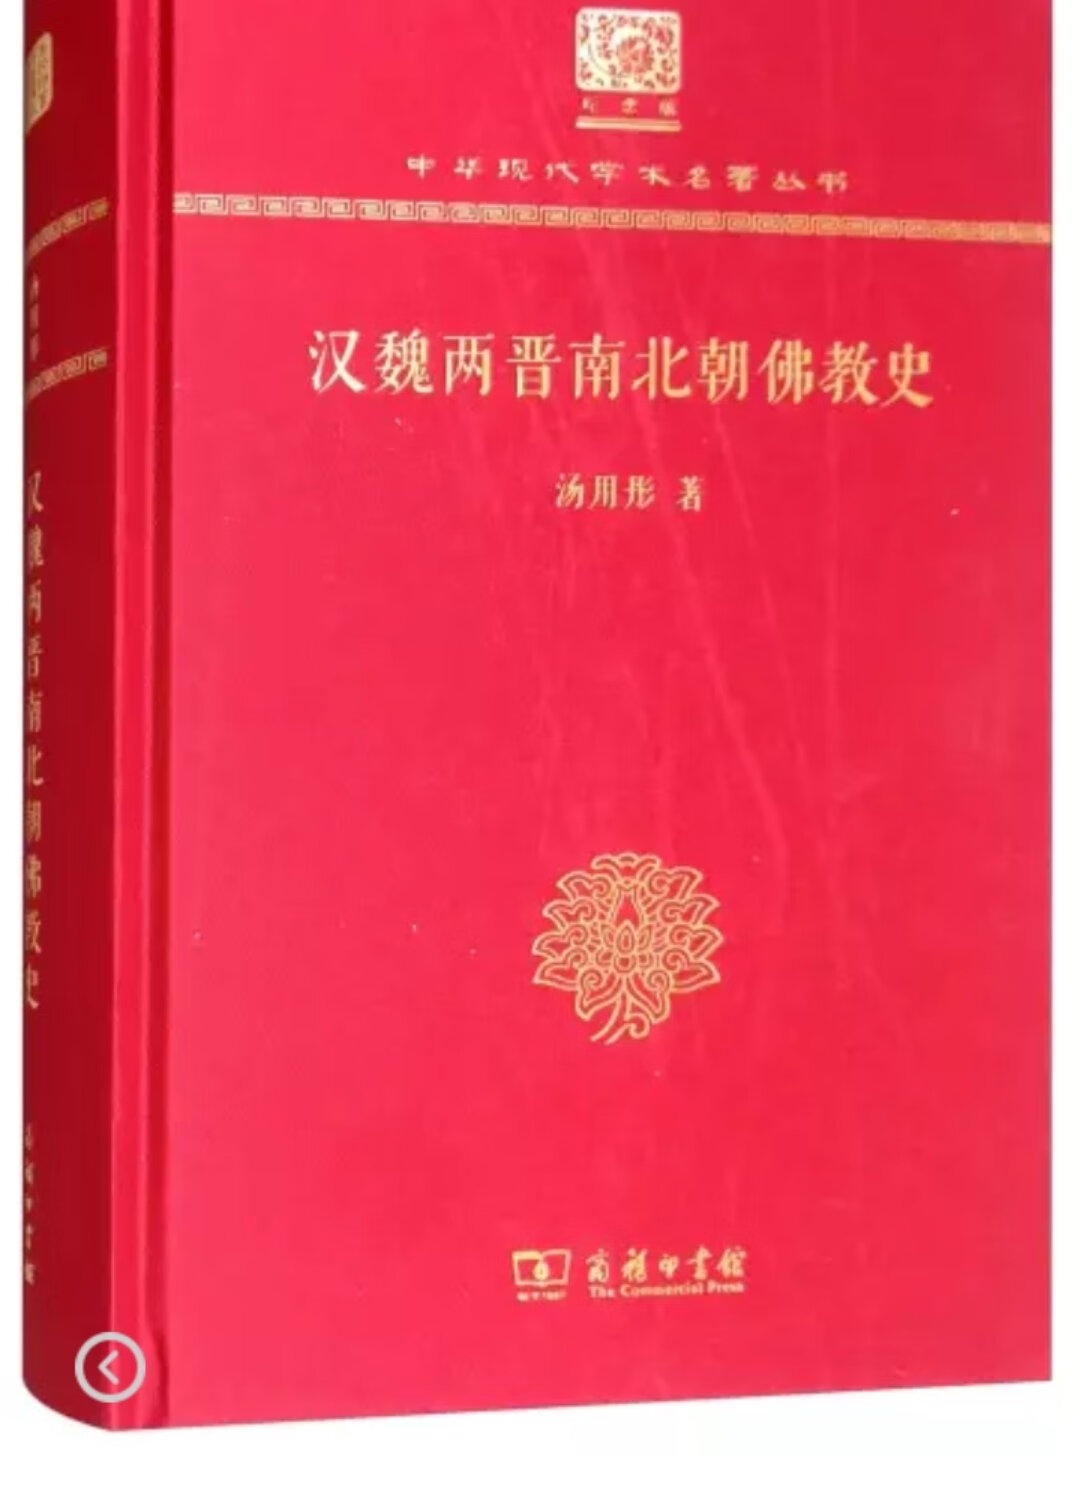 书极好，很早之前就想好好了解佛教传入中国的历史了，现在终于有这样的基础和时间来好好阅读它了，加油(? •?_•?)?